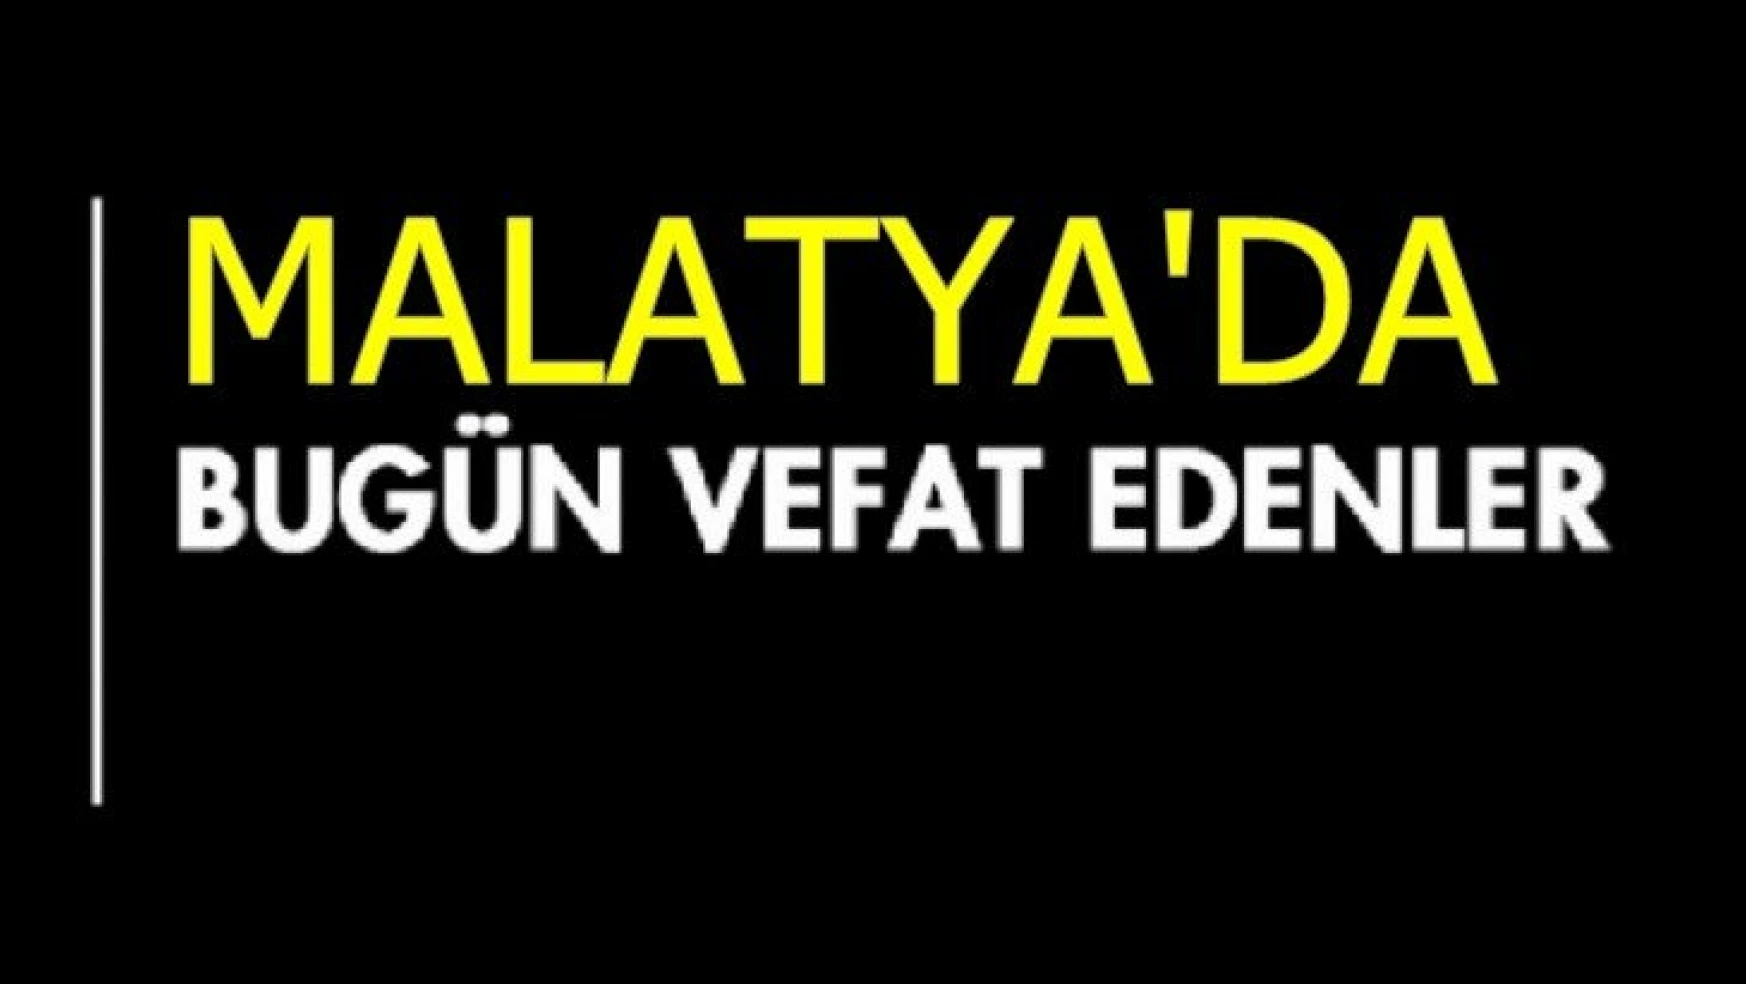 Malatya'da Bugün 14 Kişi Vefat Etti.